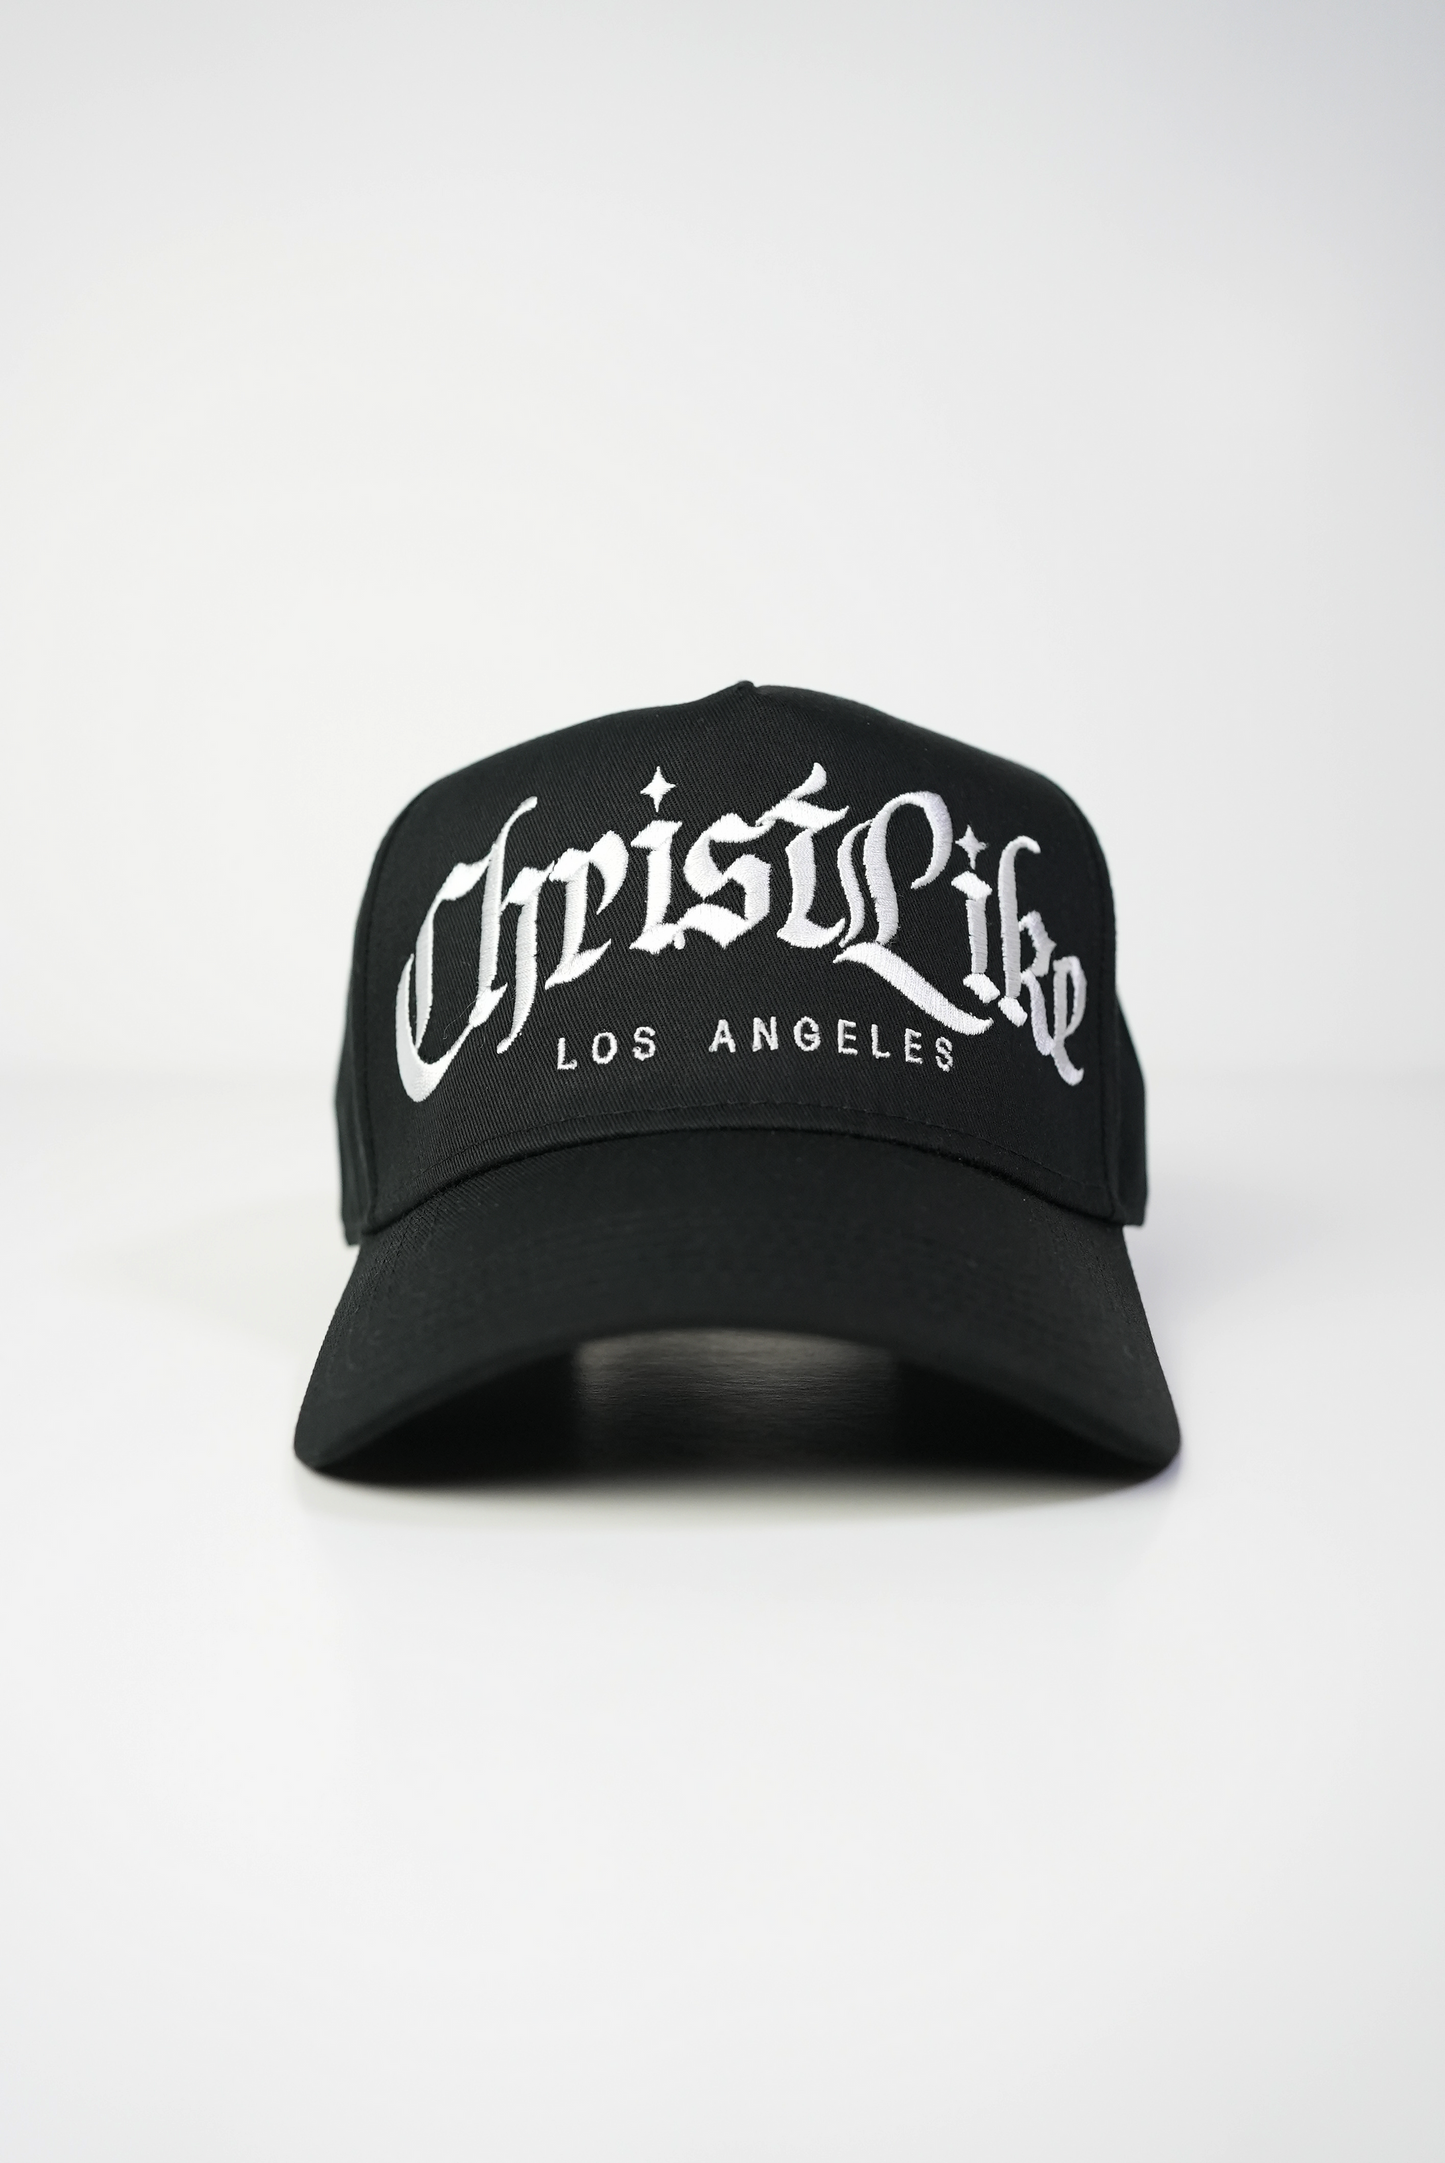 Christ-Like Los Angeles